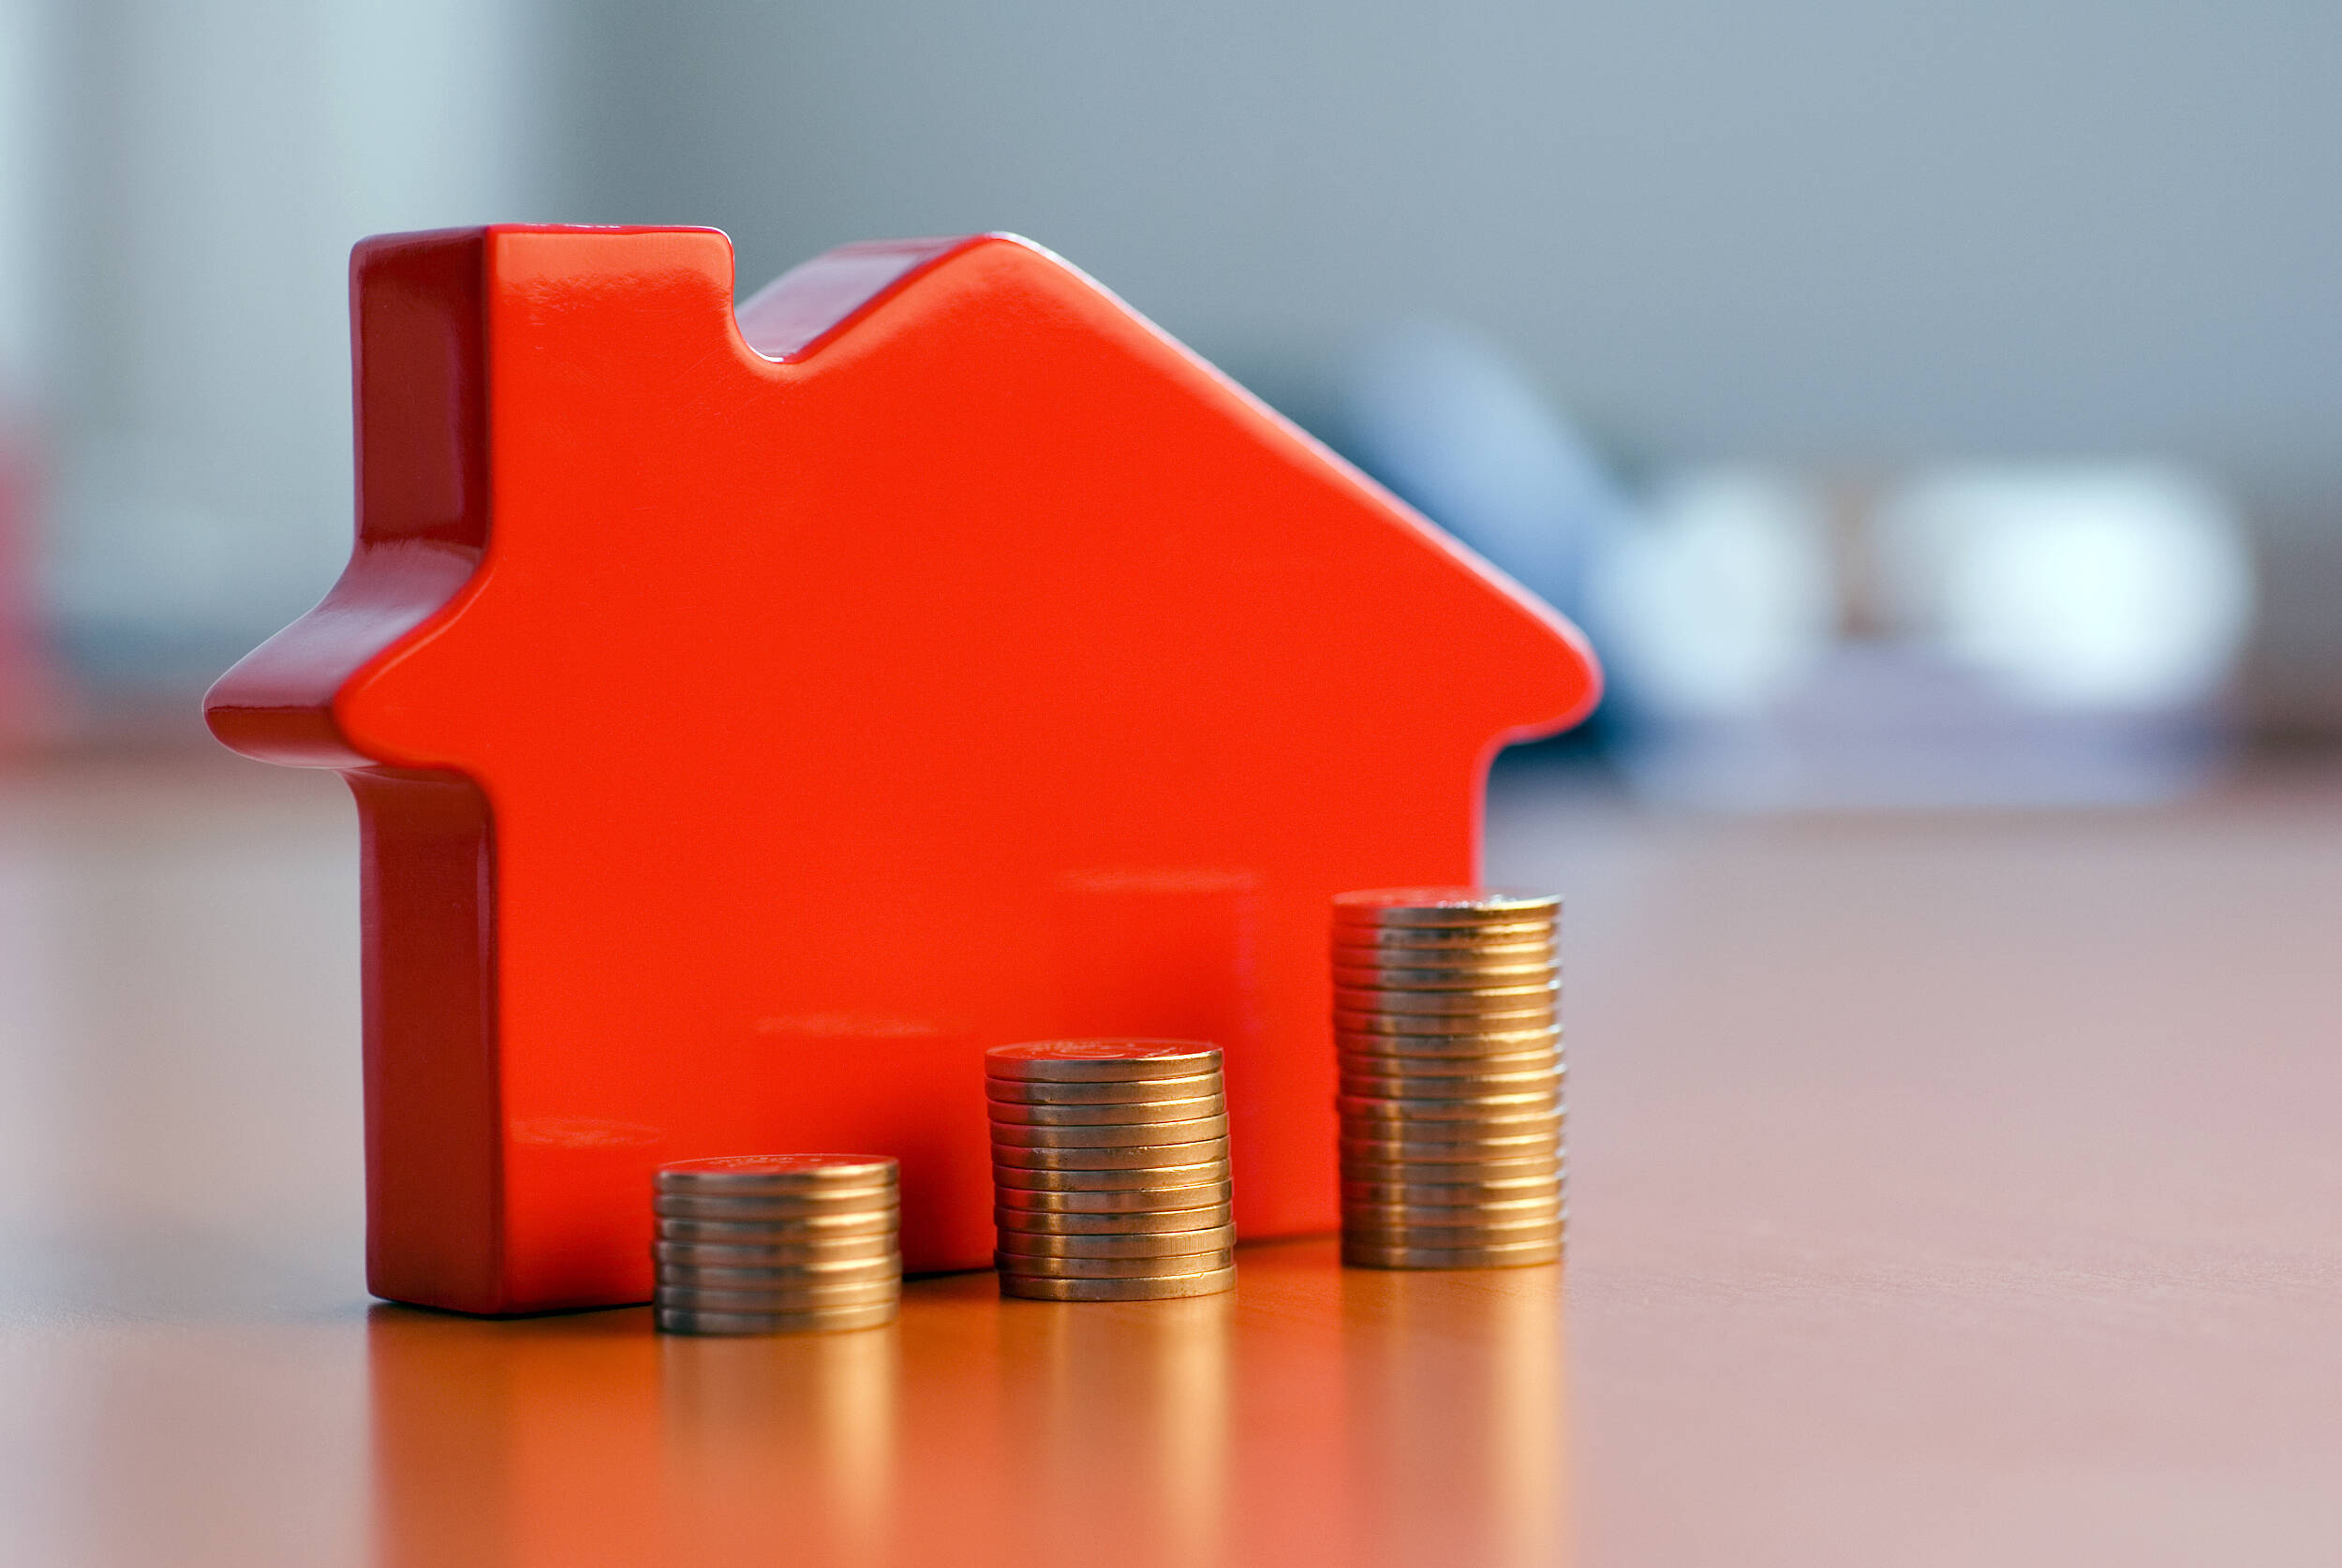 房屋买卖合同纠纷增多 房屋交易监管有待加强